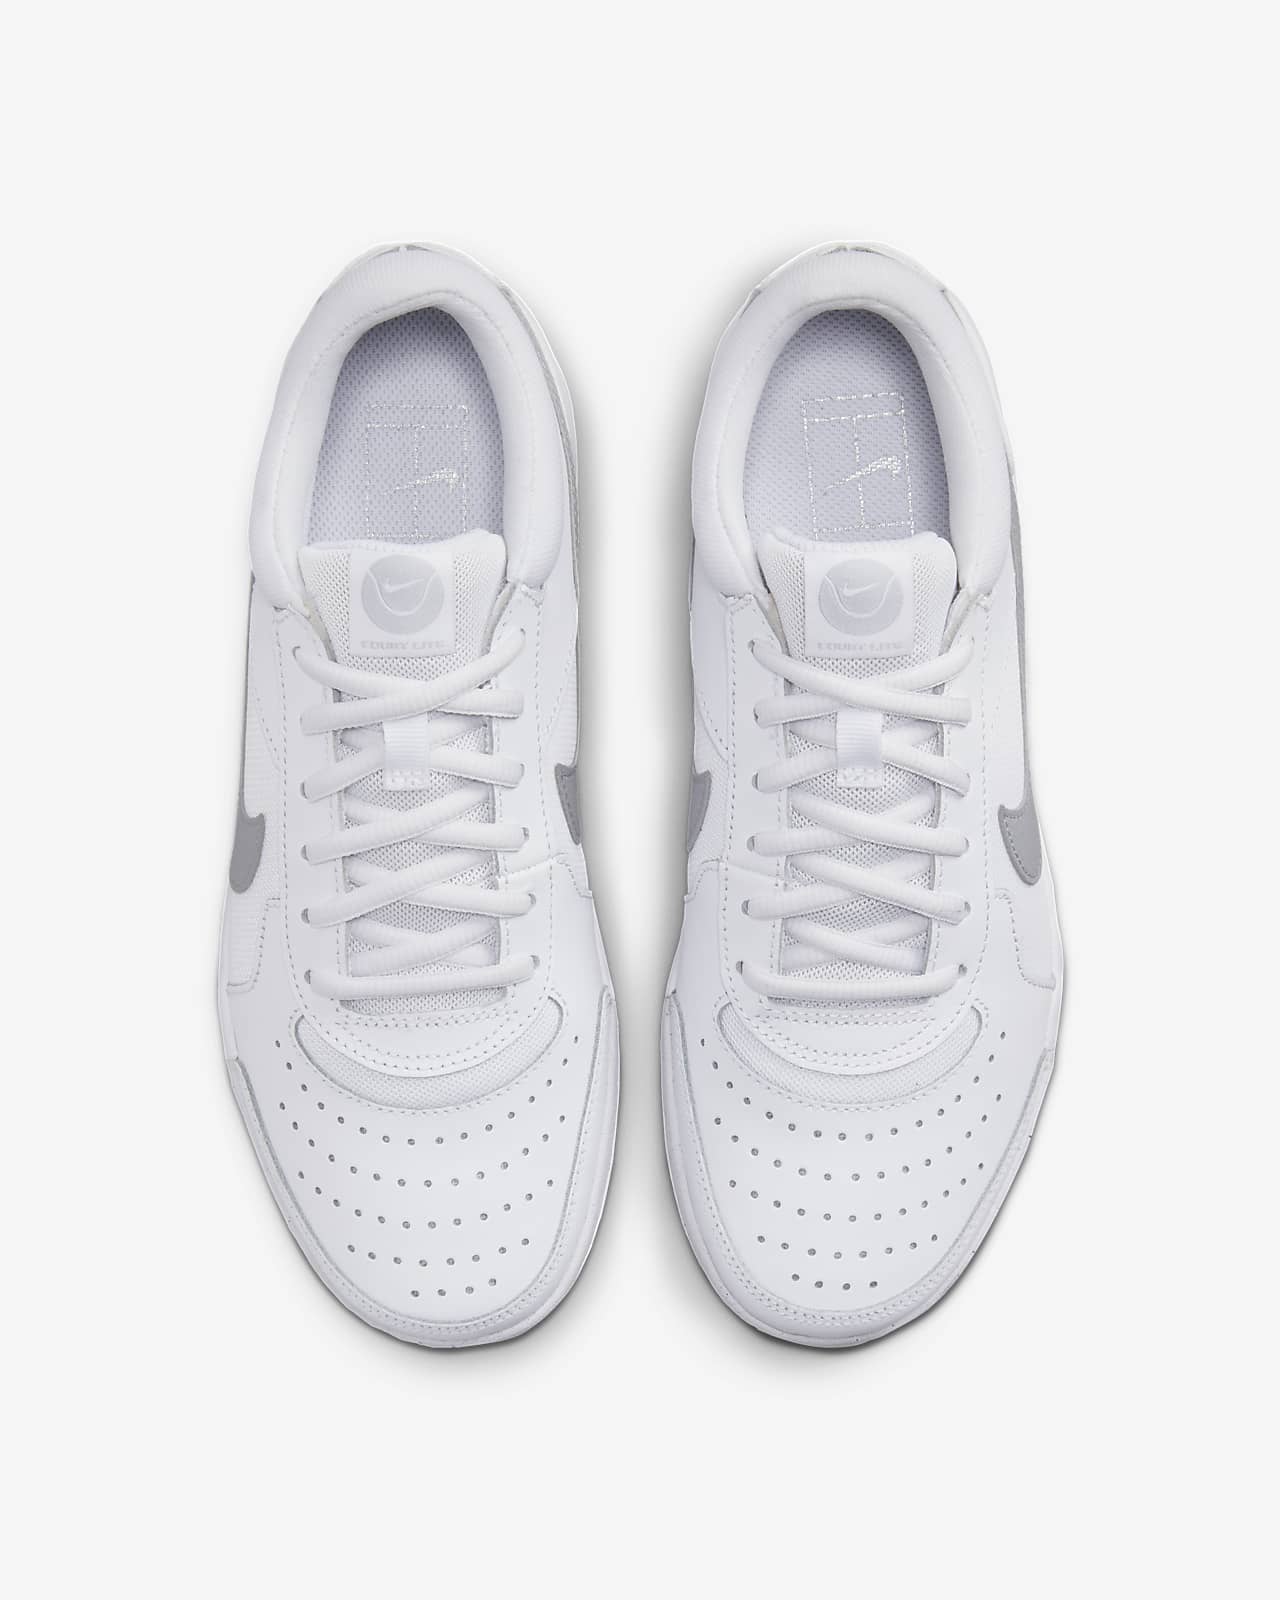 NikeCourt Air Zoom Lite 3 Zapatillas de tenis - Hombre. Nike ES